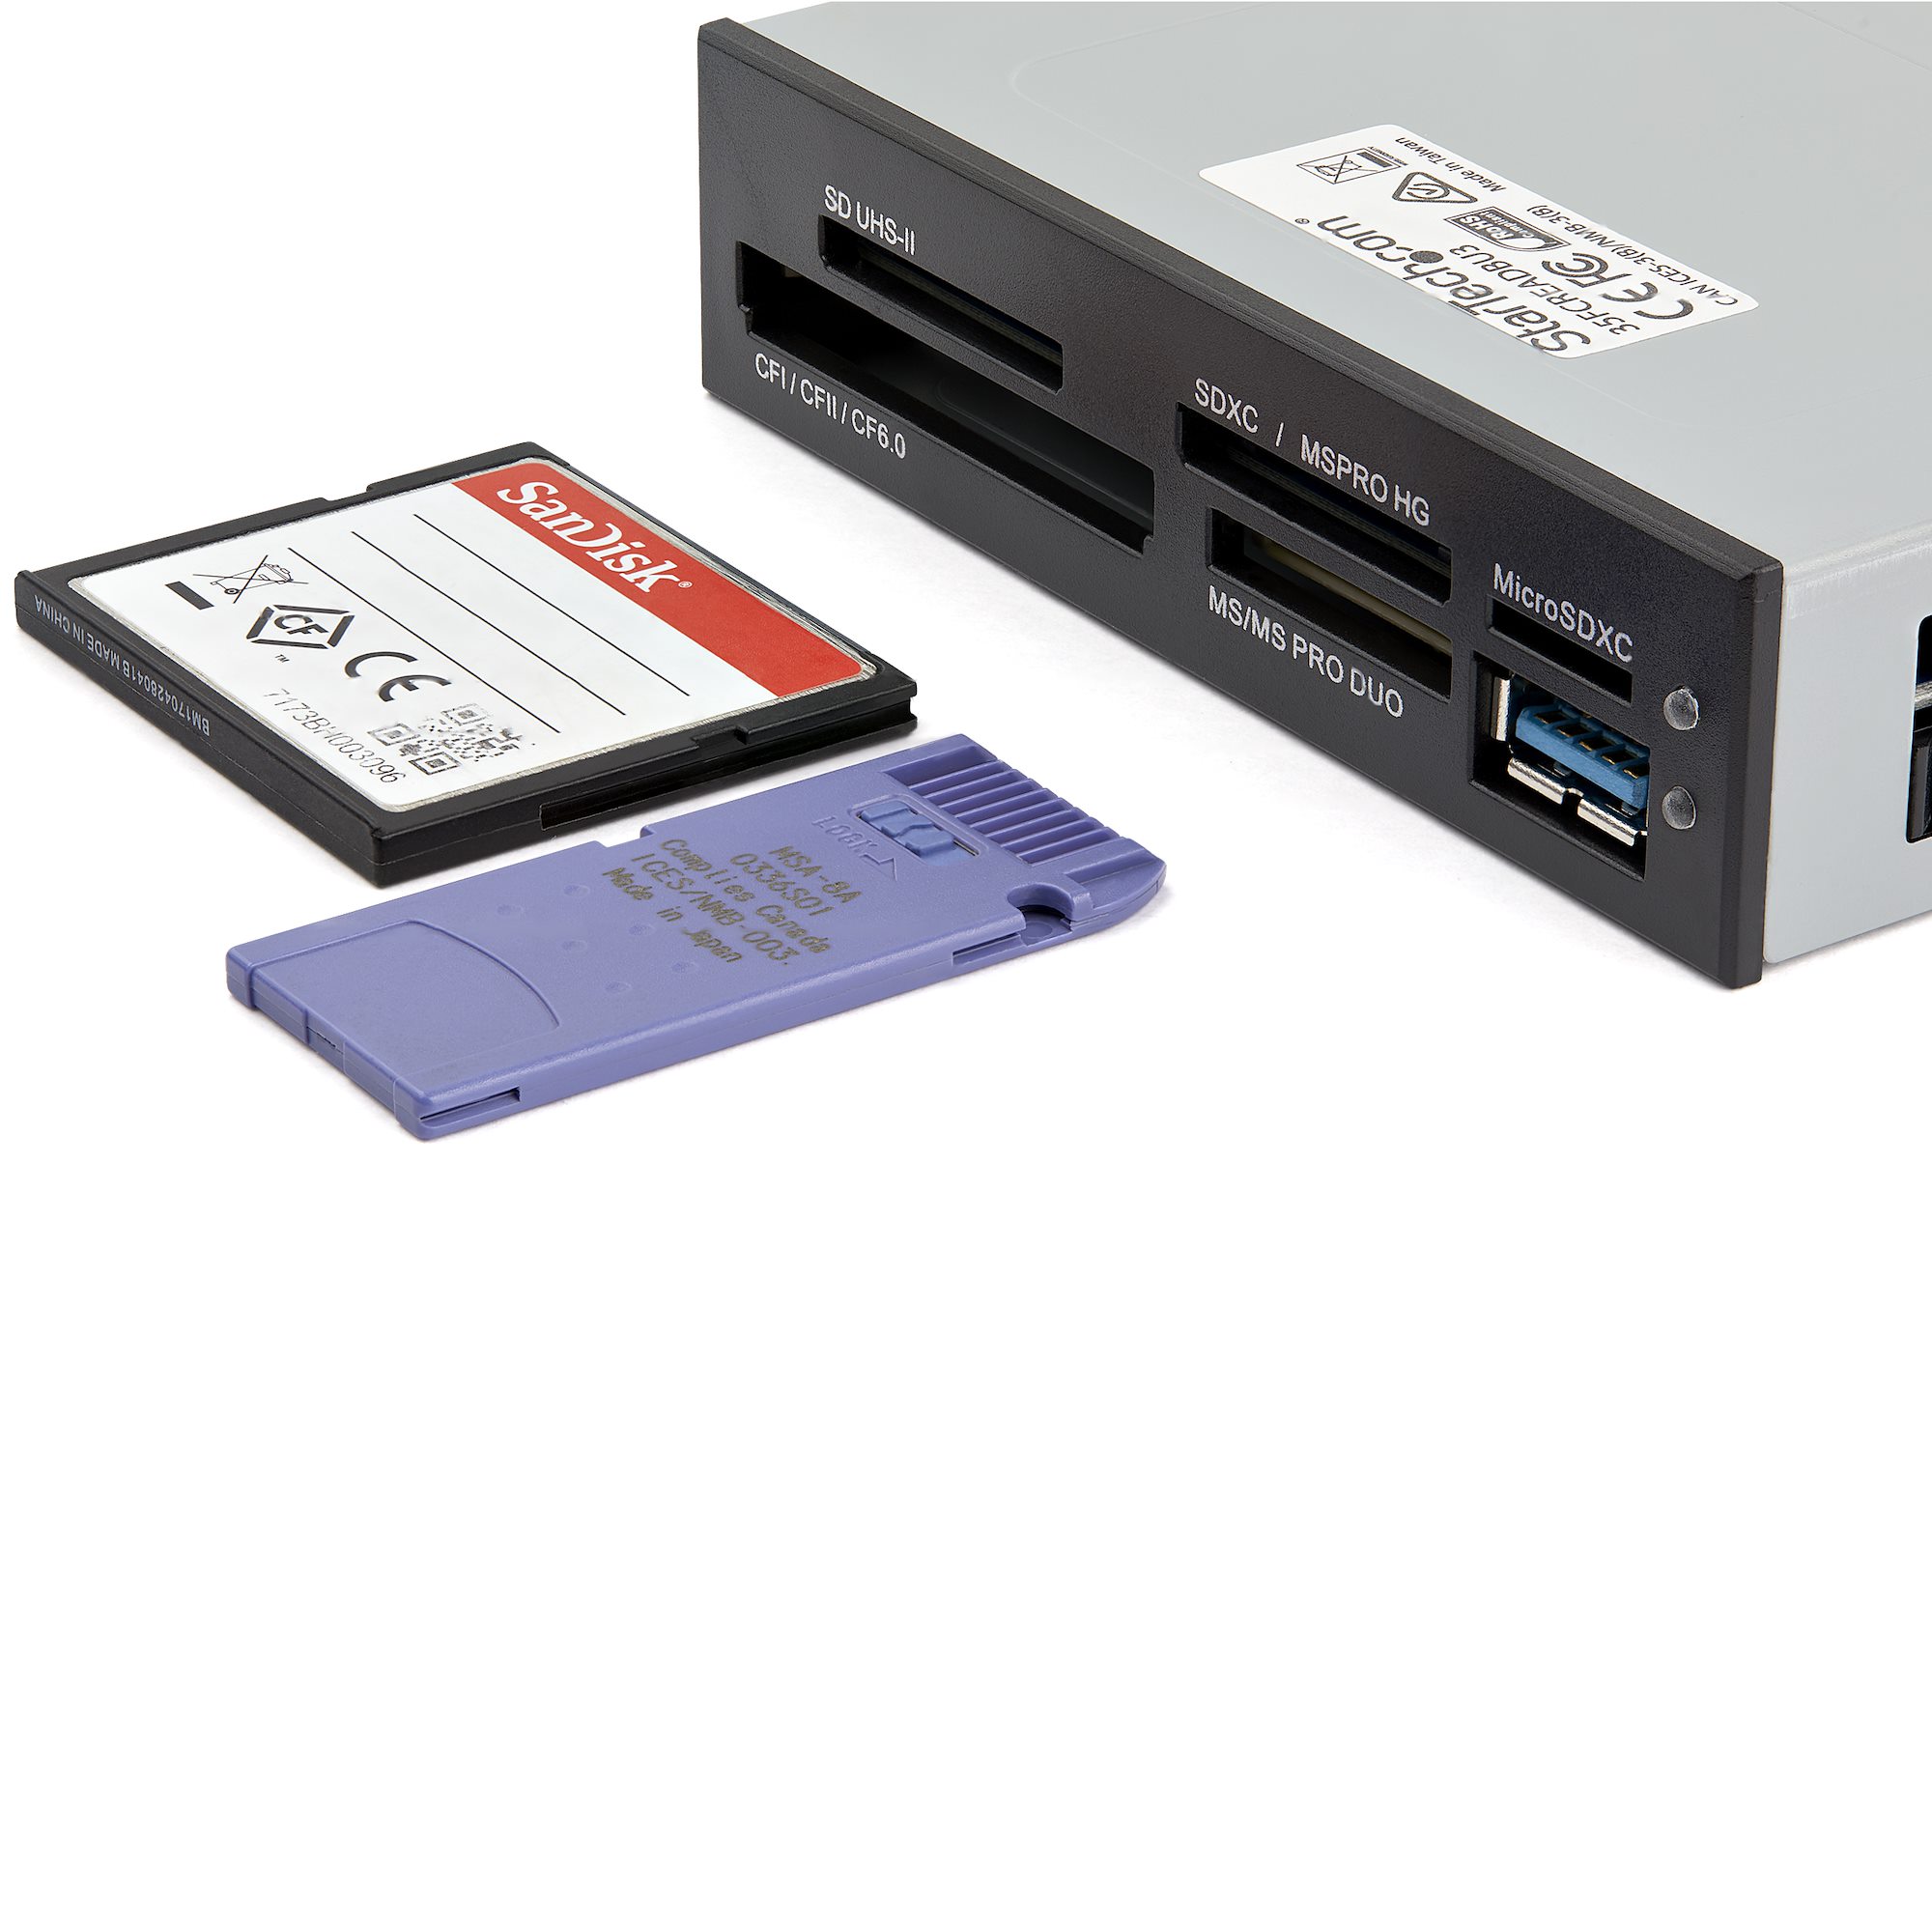 BRAUN Image Bank 80 Go disque dur externe lecteur de cartes mémoire